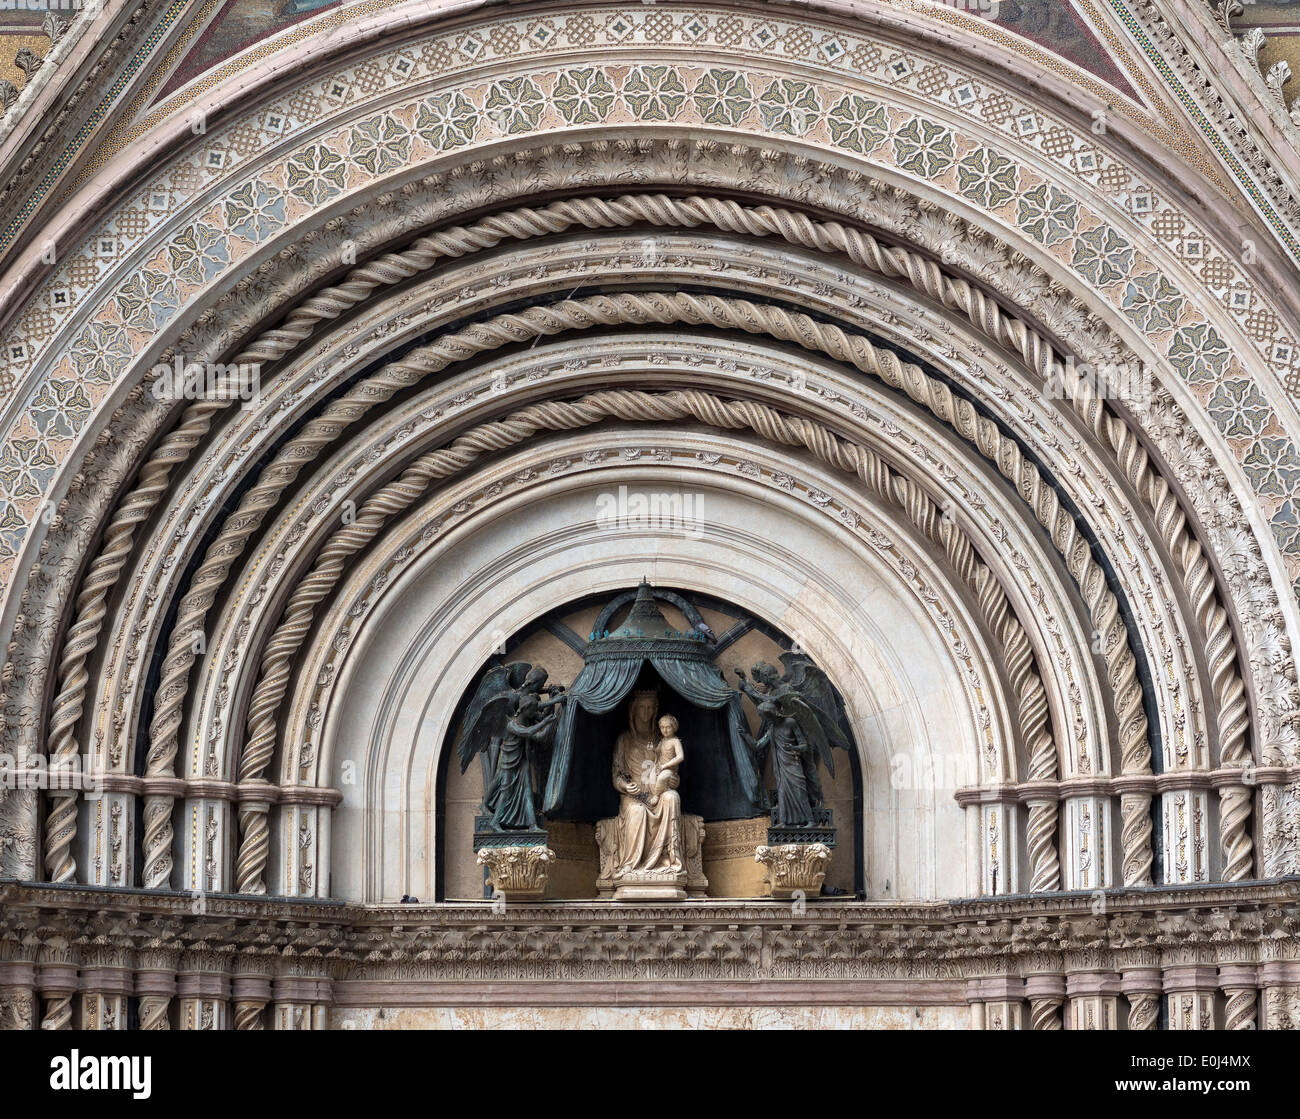 Détail de pierres sculptées et décoration en mosaïque sur la façade de la cathédrale d'Orvieto, Ombrie, Italie Banque D'Images